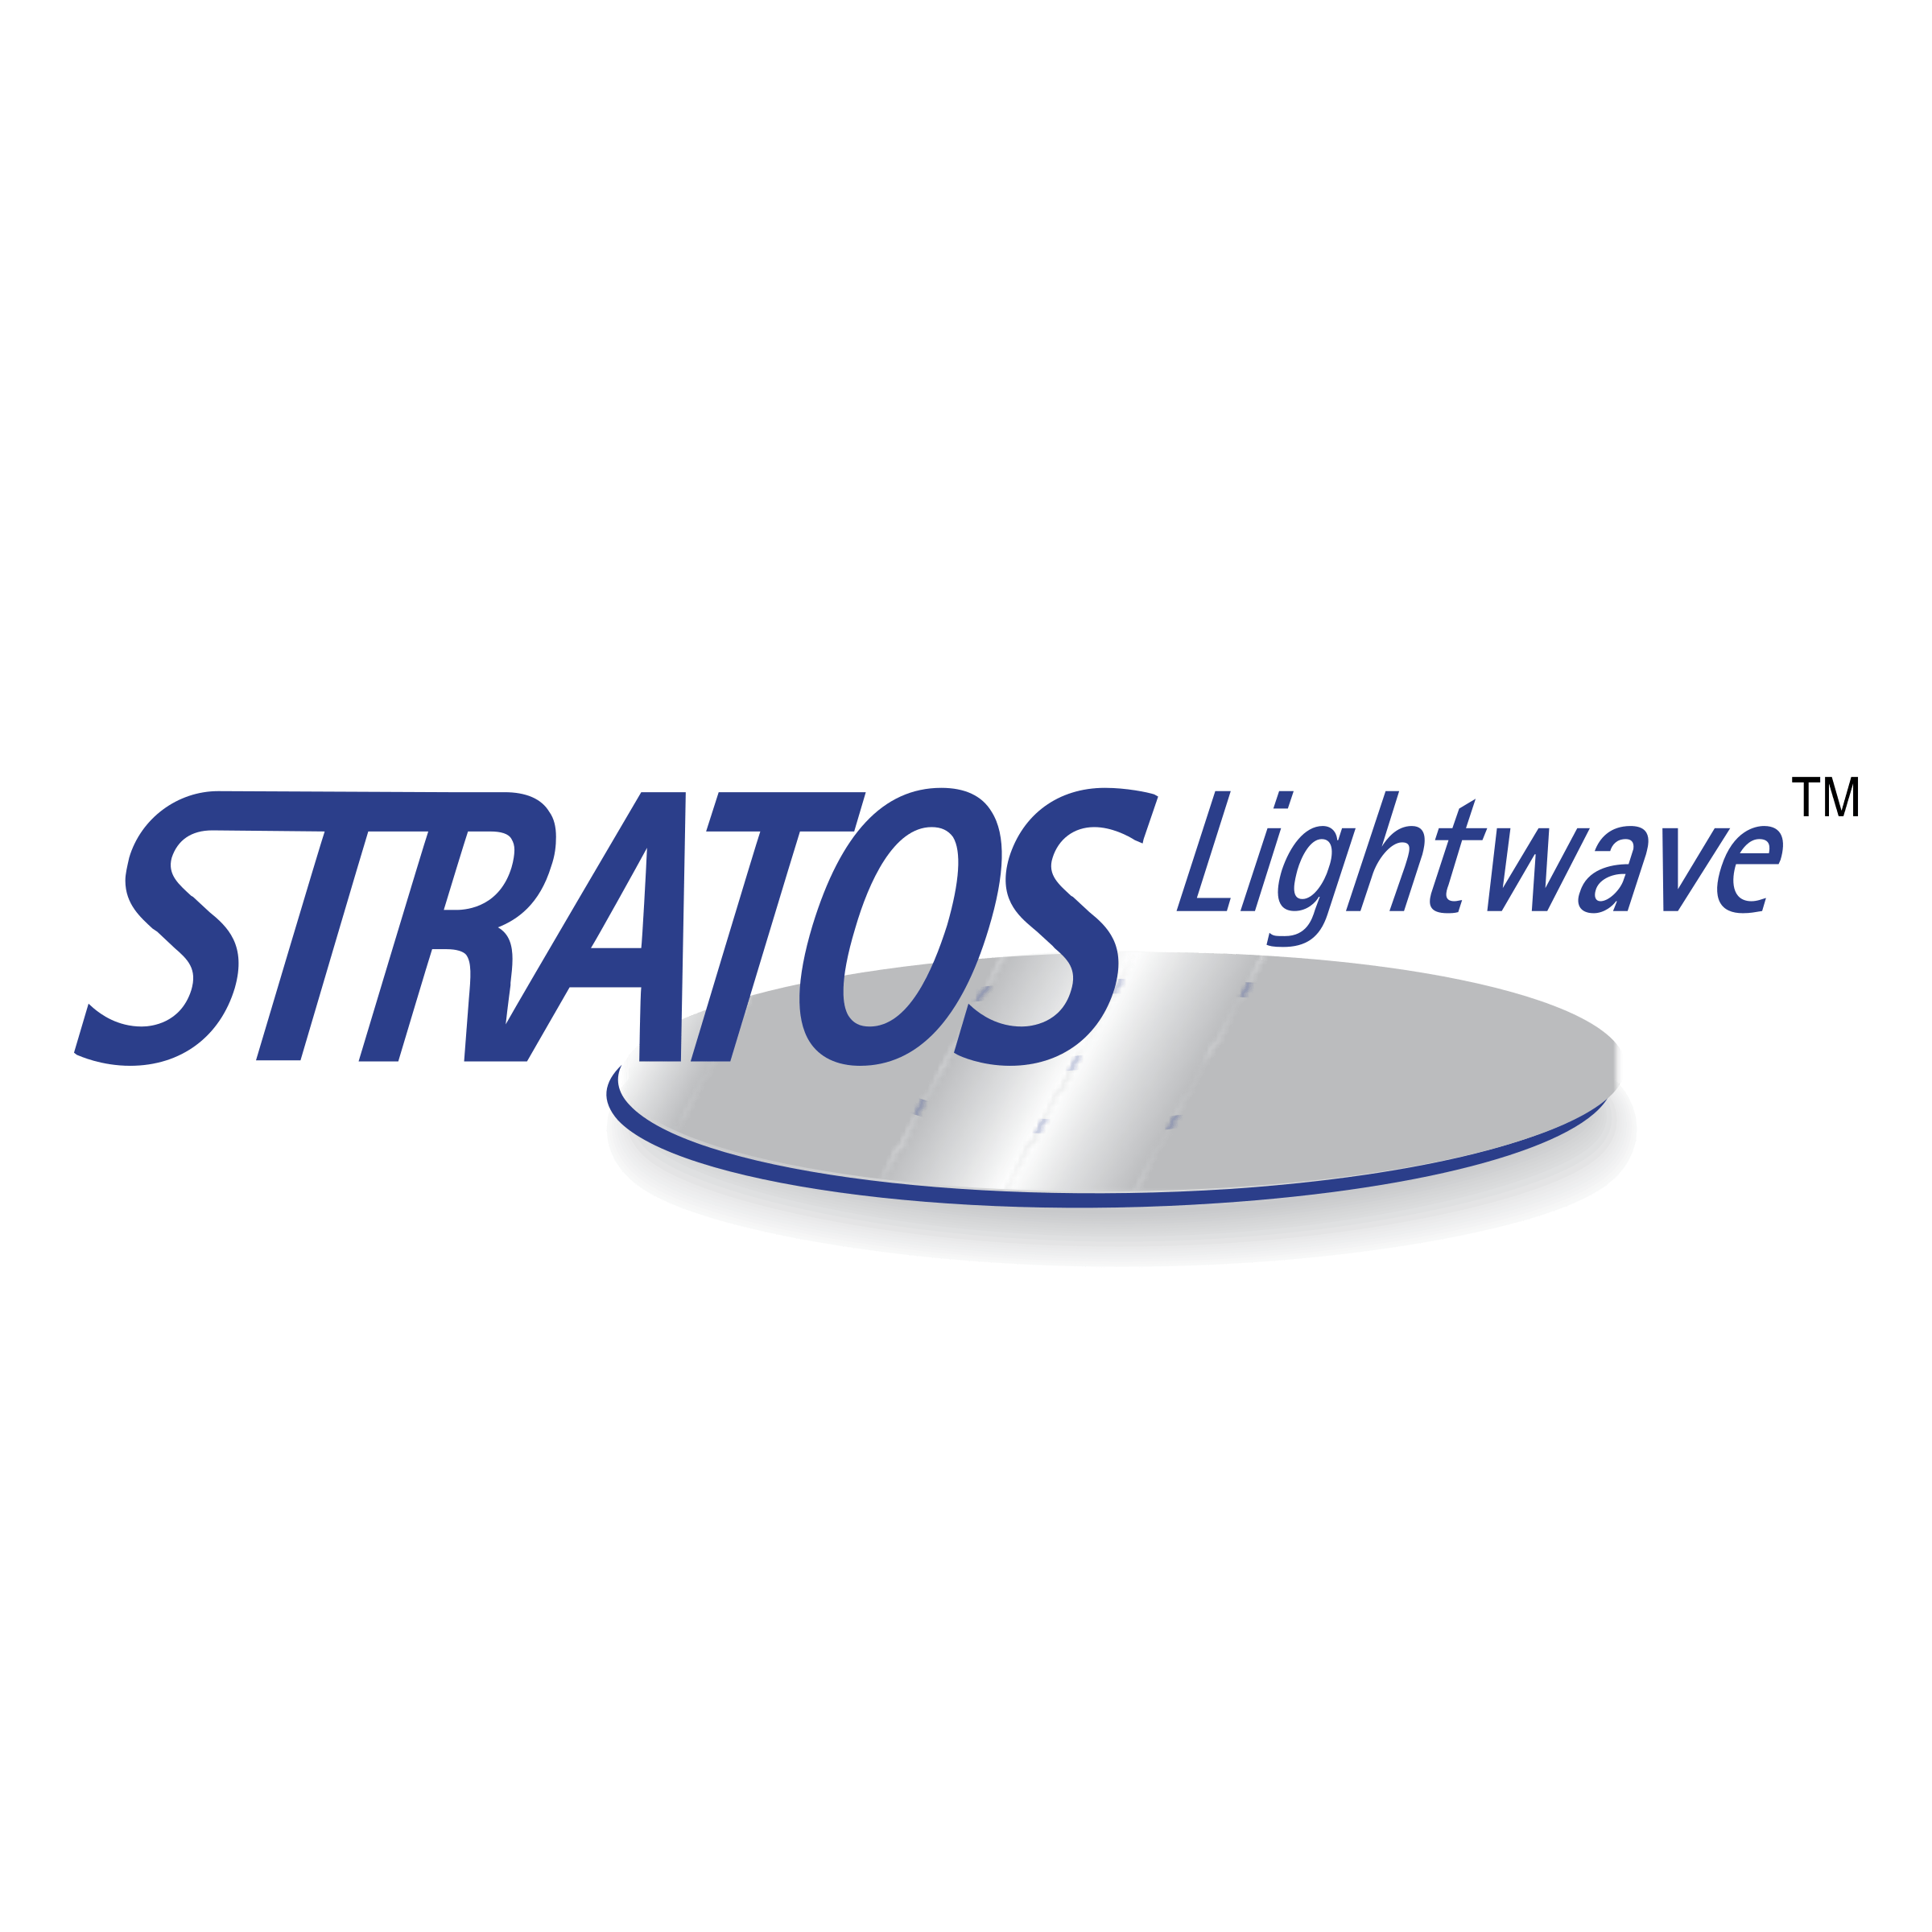 Stratos Logo - Stratos Lightwave Logo PNG Transparent & SVG Vector